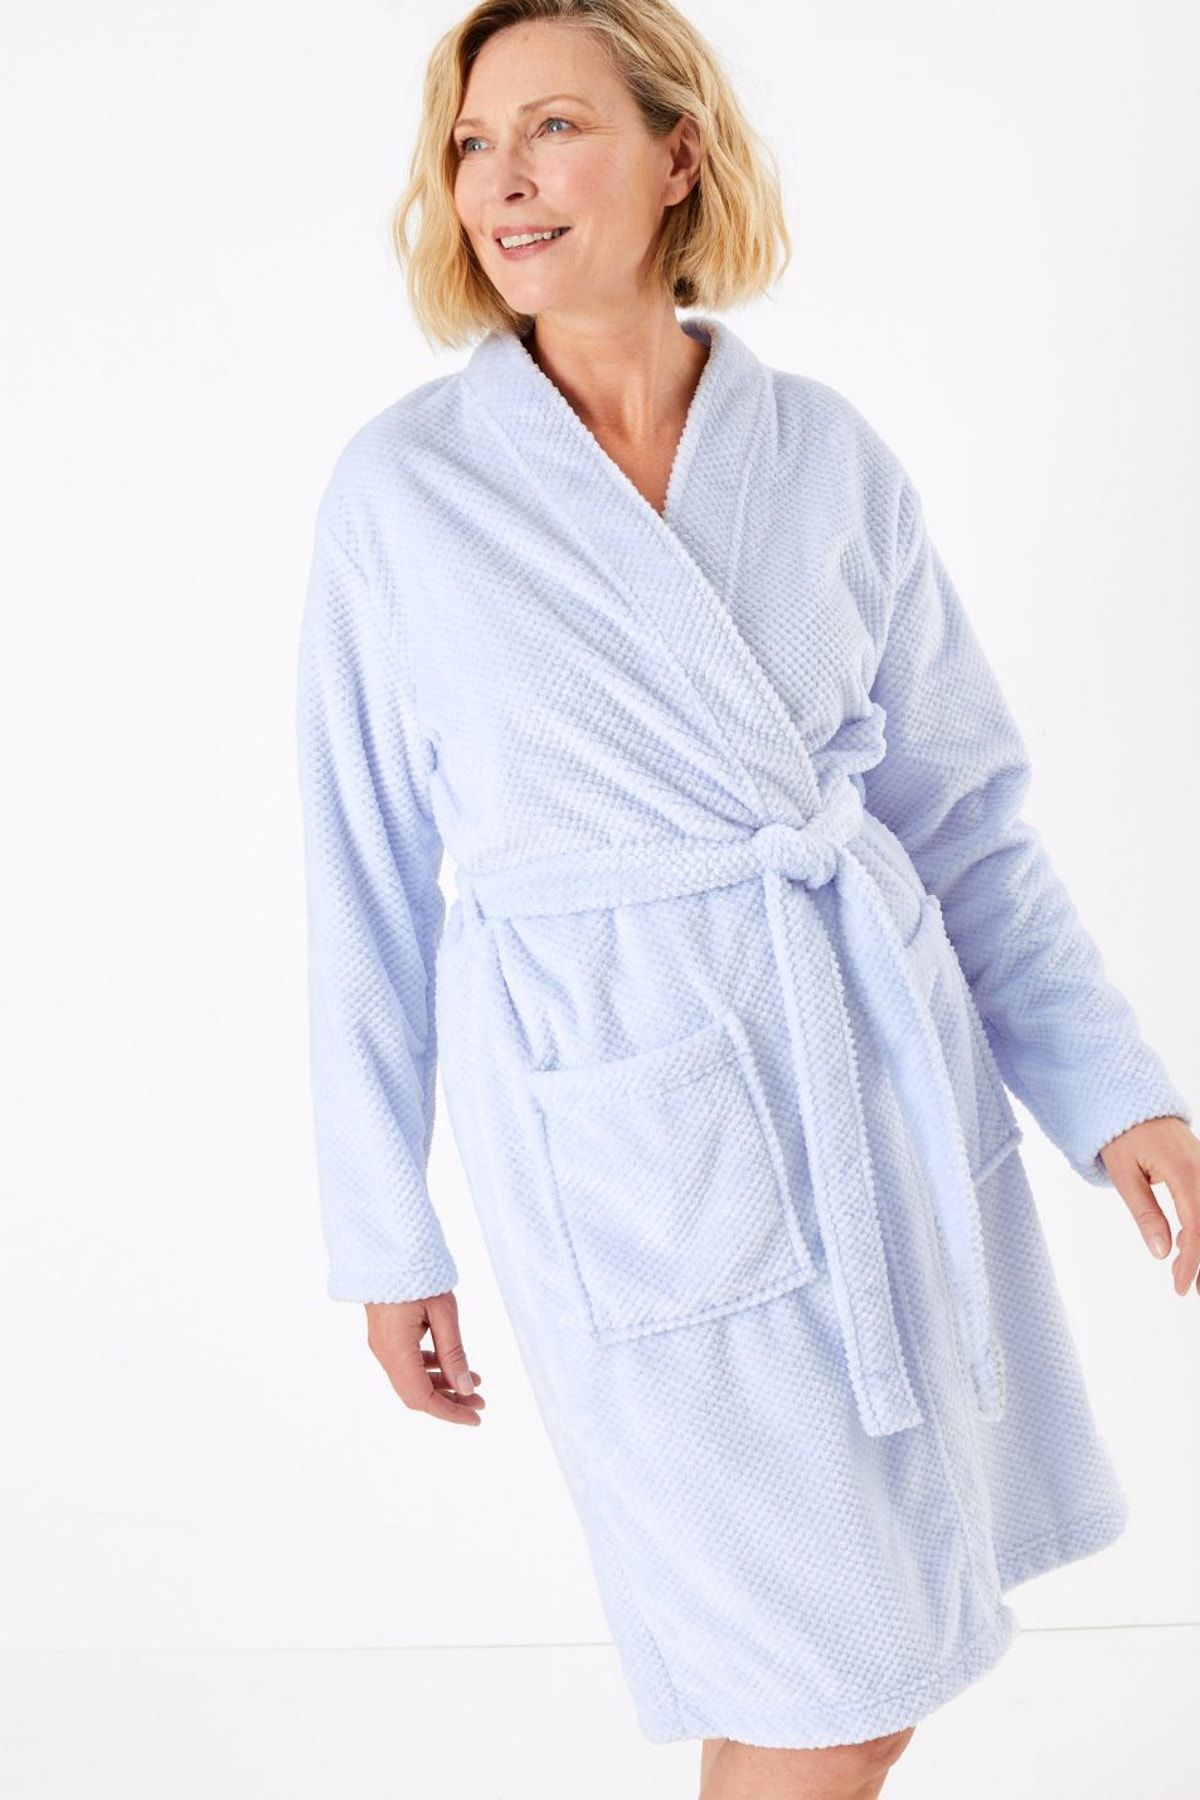 Marks & Spencer Kadın Mavi Dokulu Kimono Sabahlık T37002300G